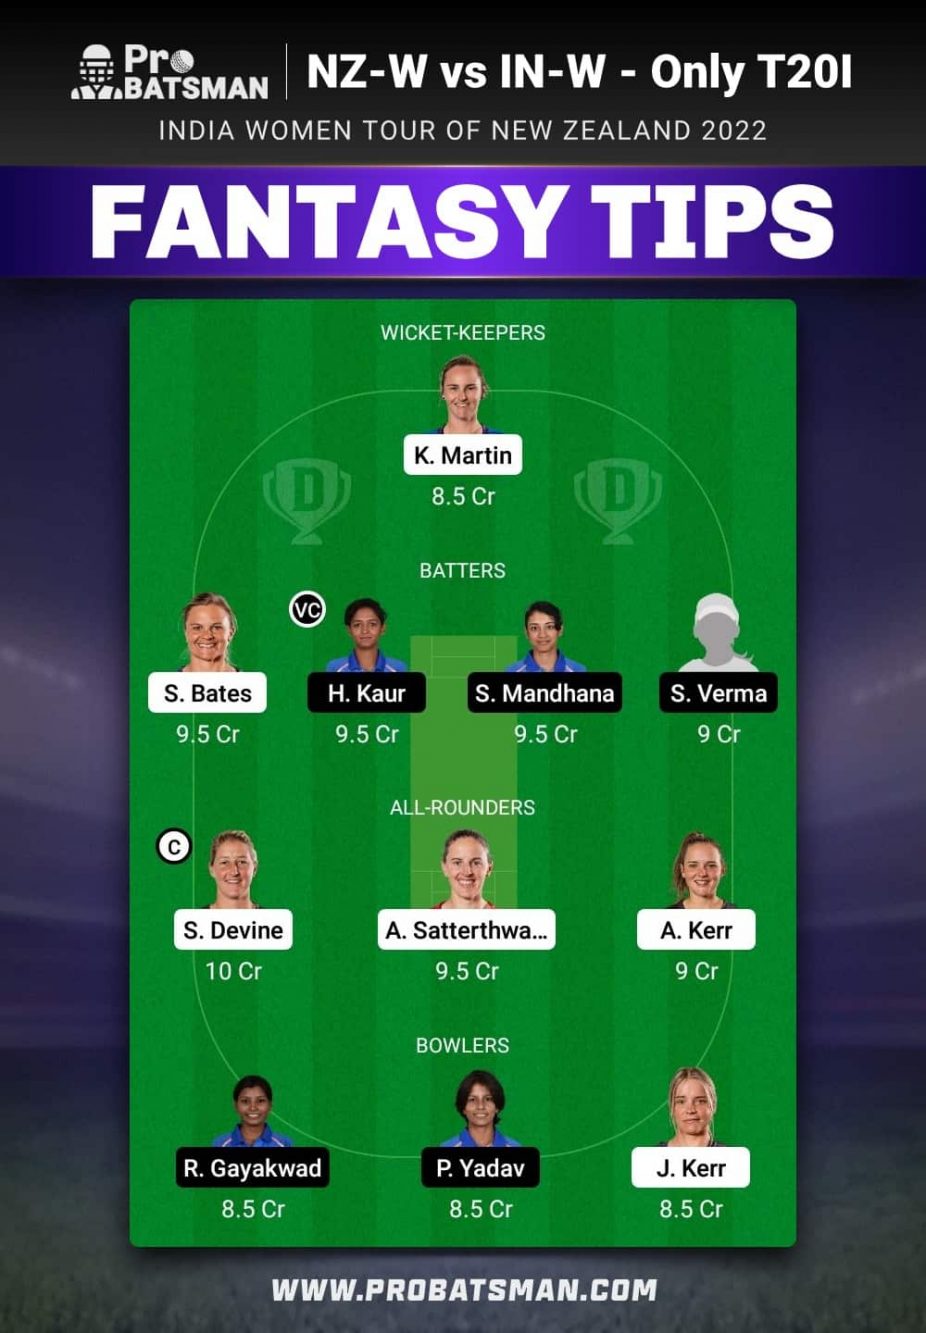 NZ-W vs IN-W Dream11 Fantasy Team Prediction